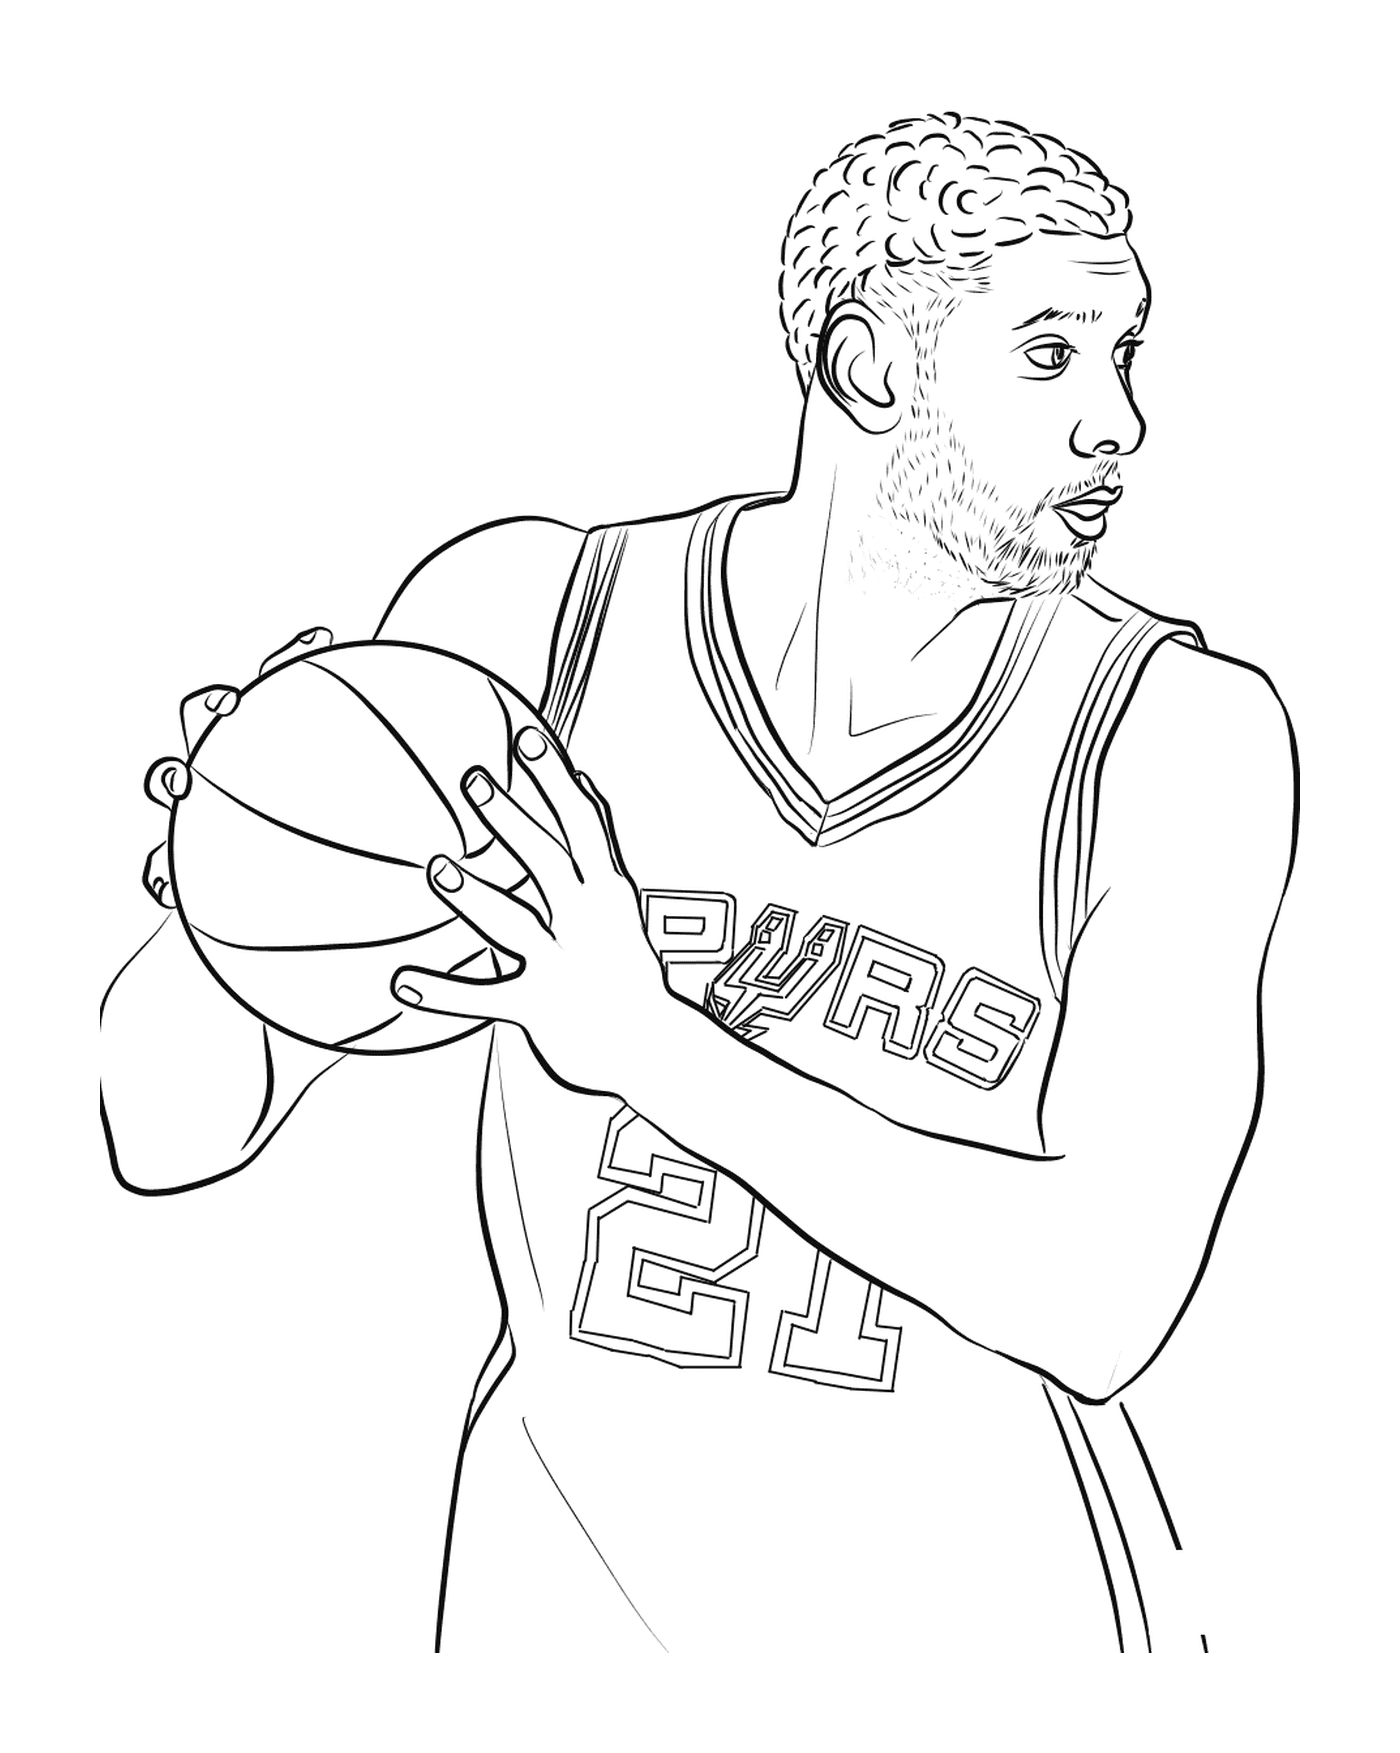  Tim Duncan segura uma bola de basquete 